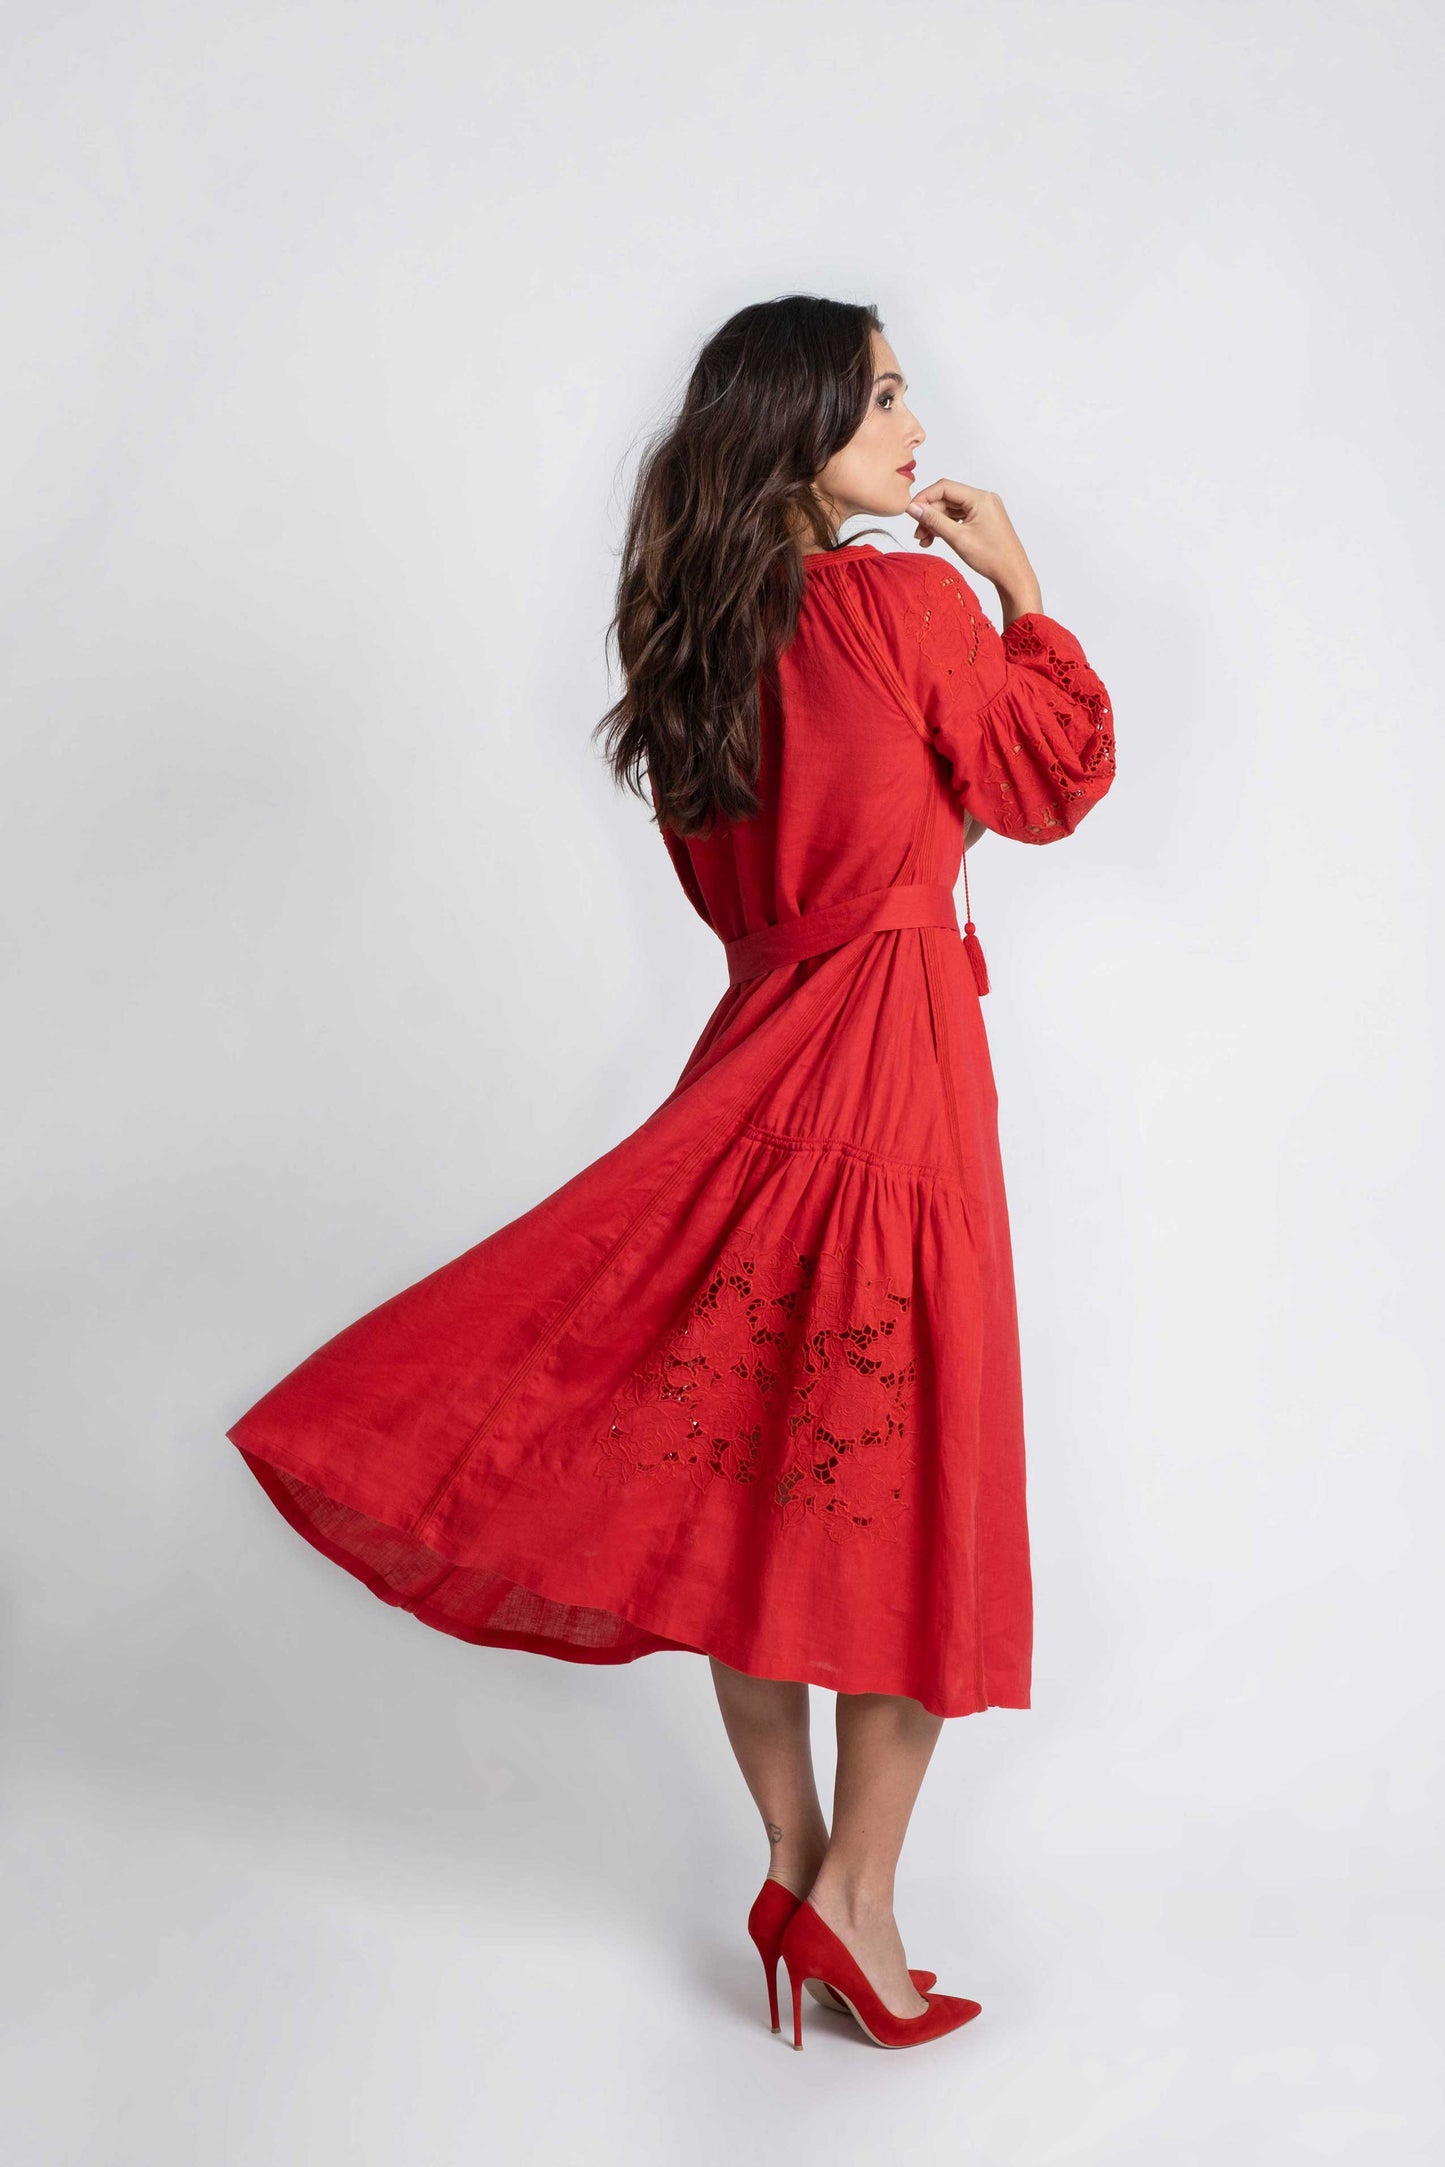 Vestido de lino rojo con bordado suizo con cinturón, pompones y botones de nácar